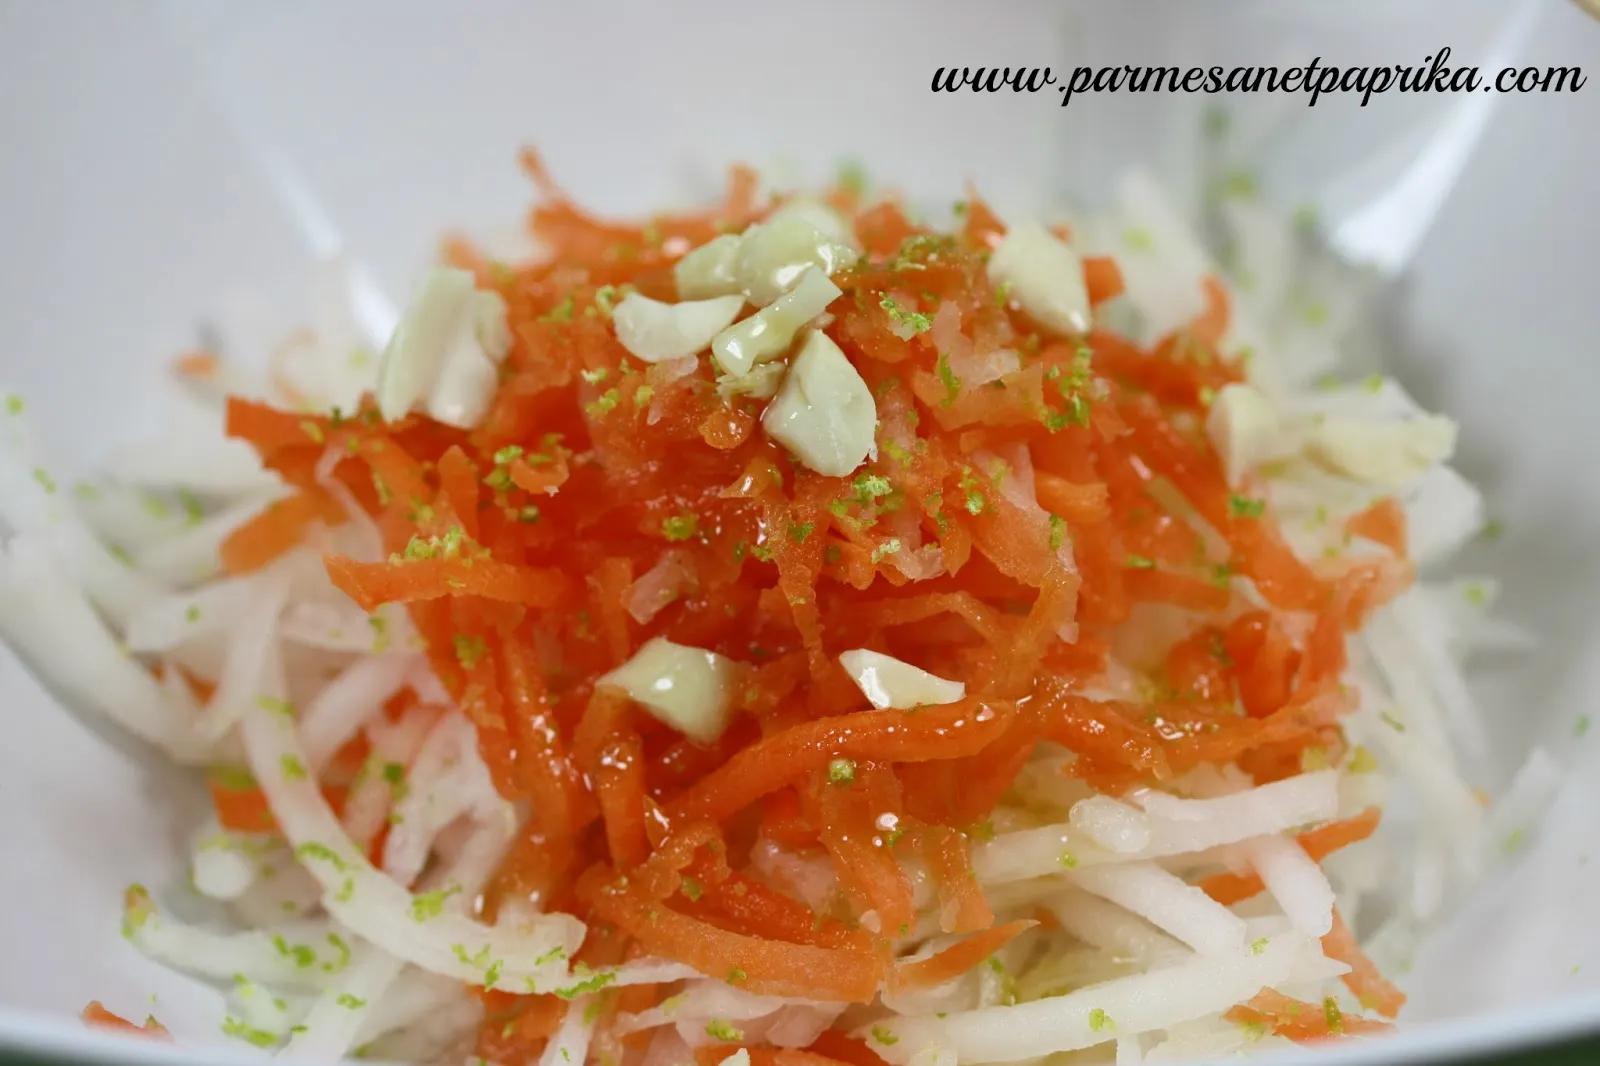 Parmesan et Paprika: Salade façon Thaï de Daikon et Carottes